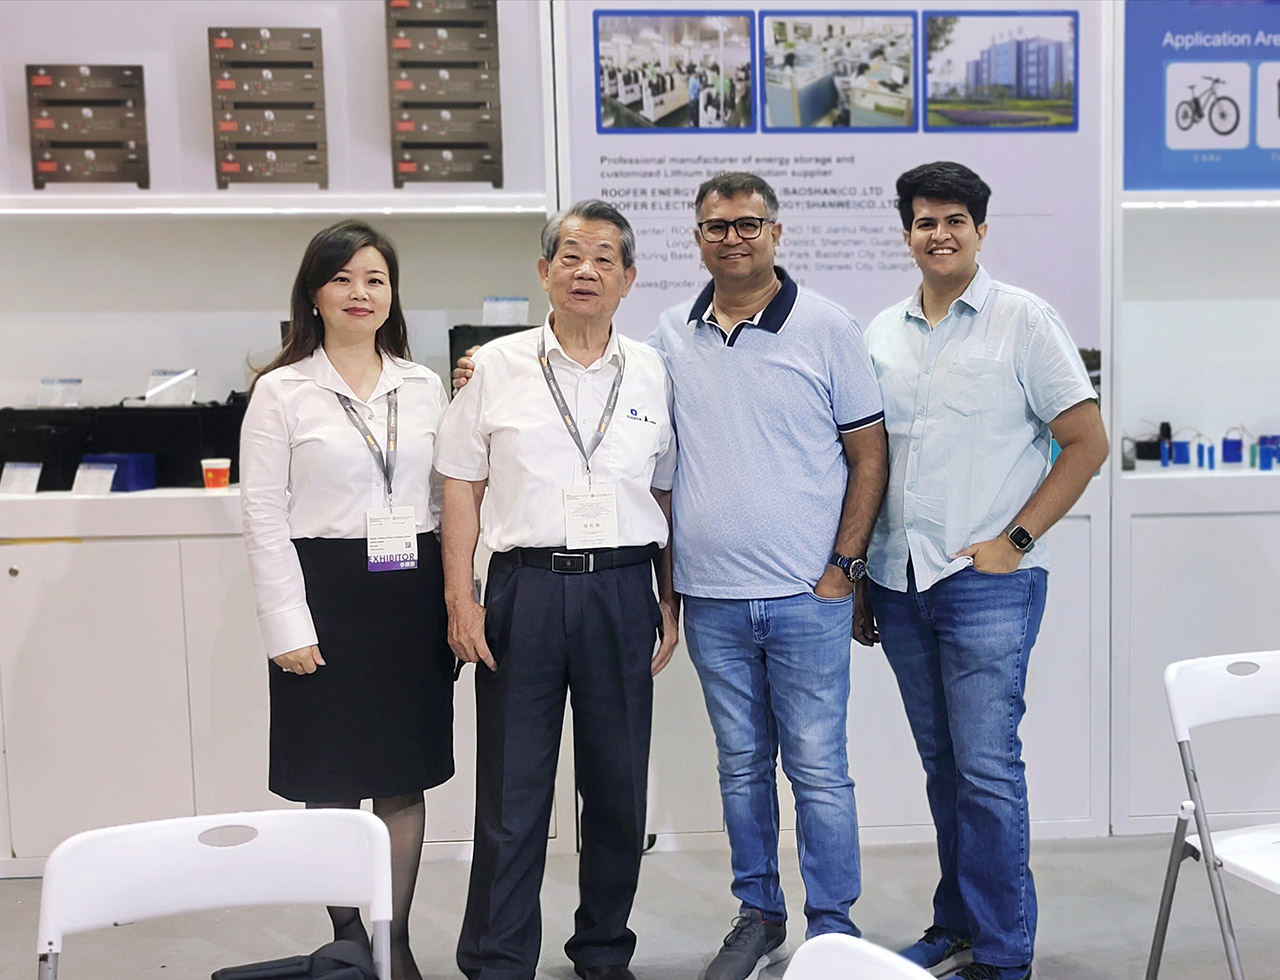 Roofer Group hà debuttatu à a Hong Kong Autumn Electronics Exhibition cù novi prudutti di almacenamentu di energia